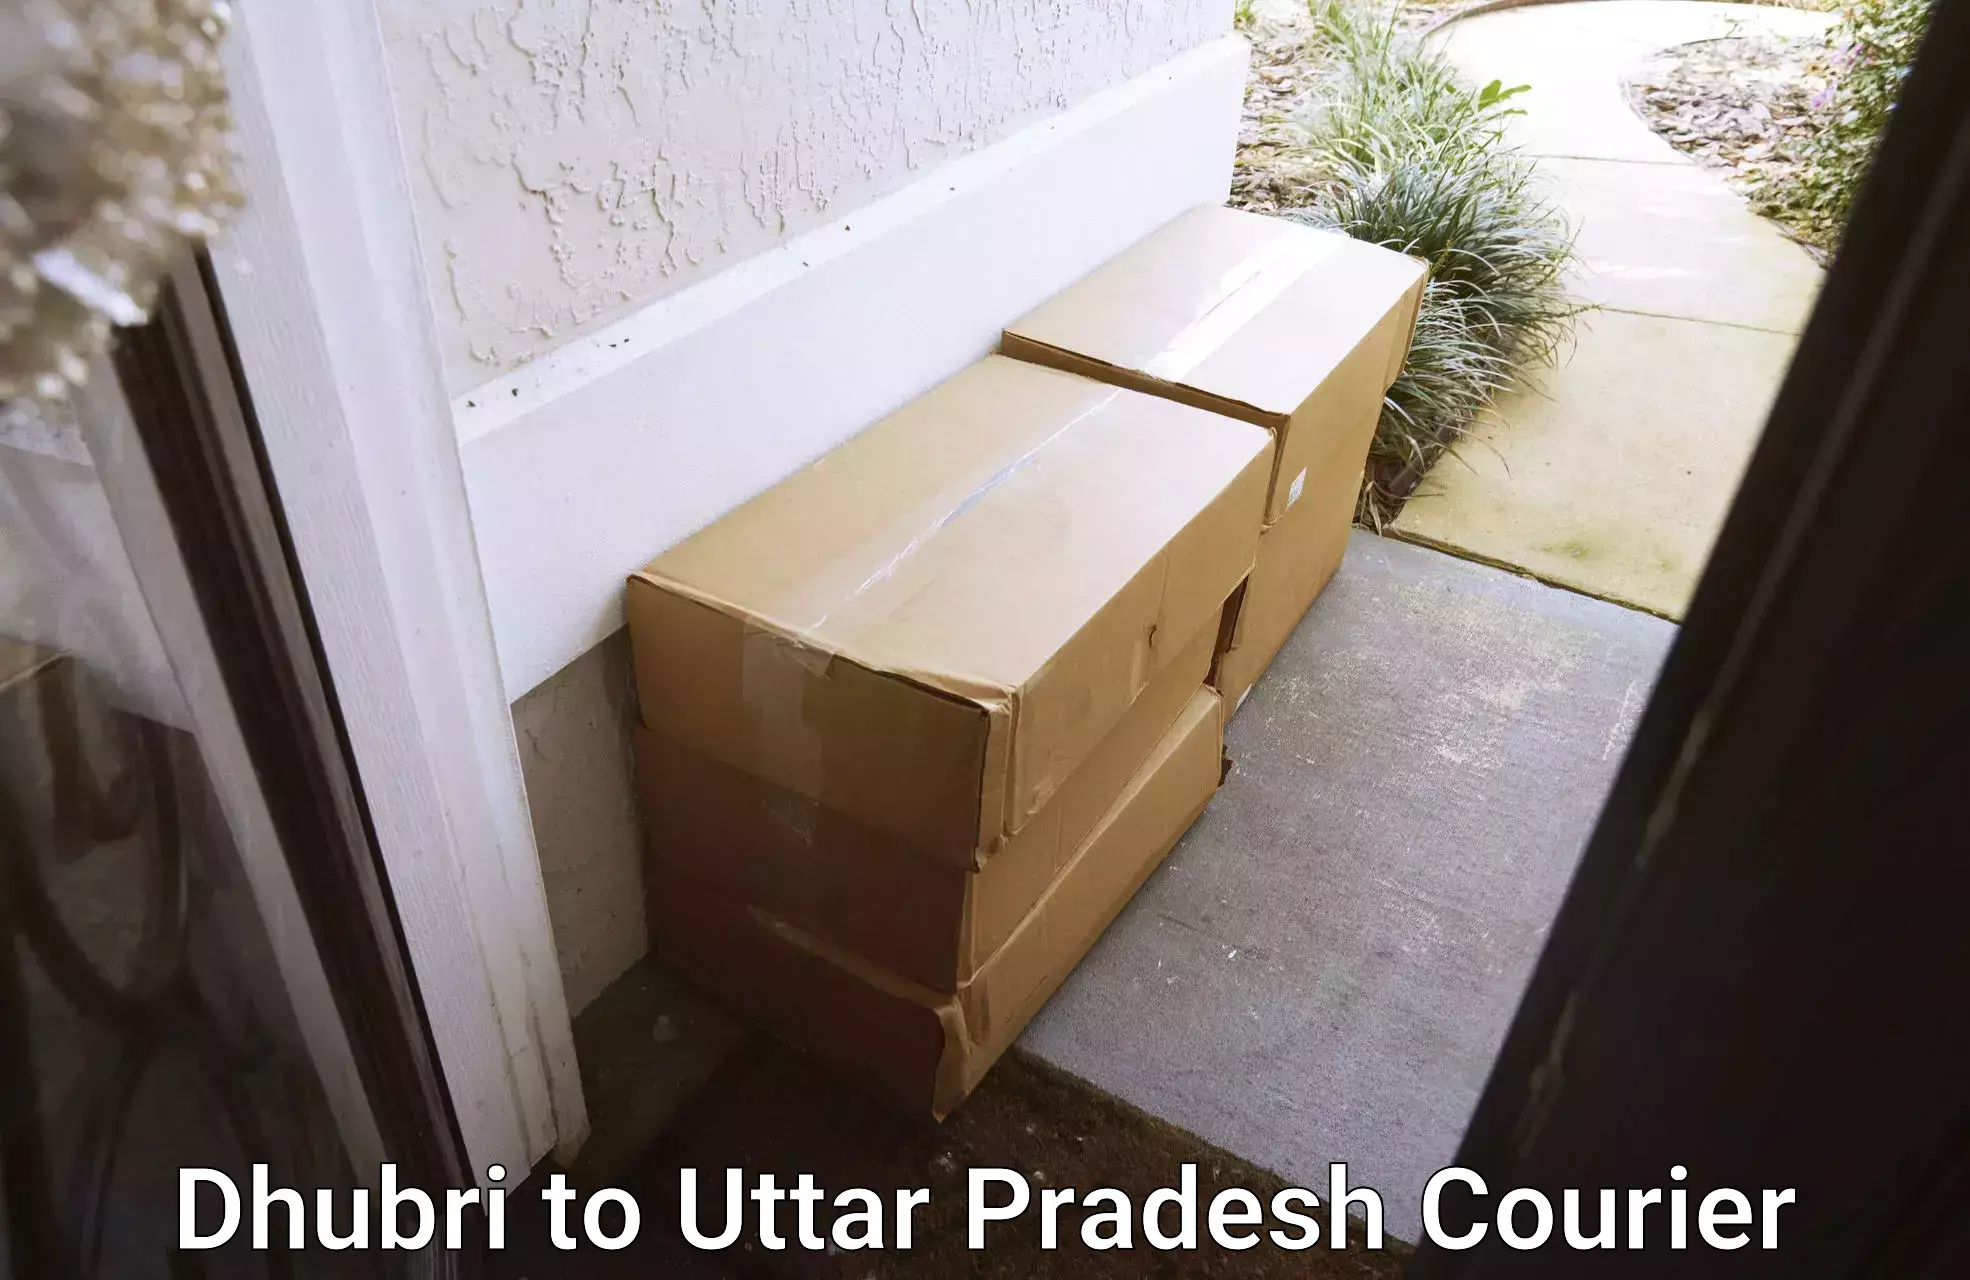 Flexible parcel services Dhubri to Mathura